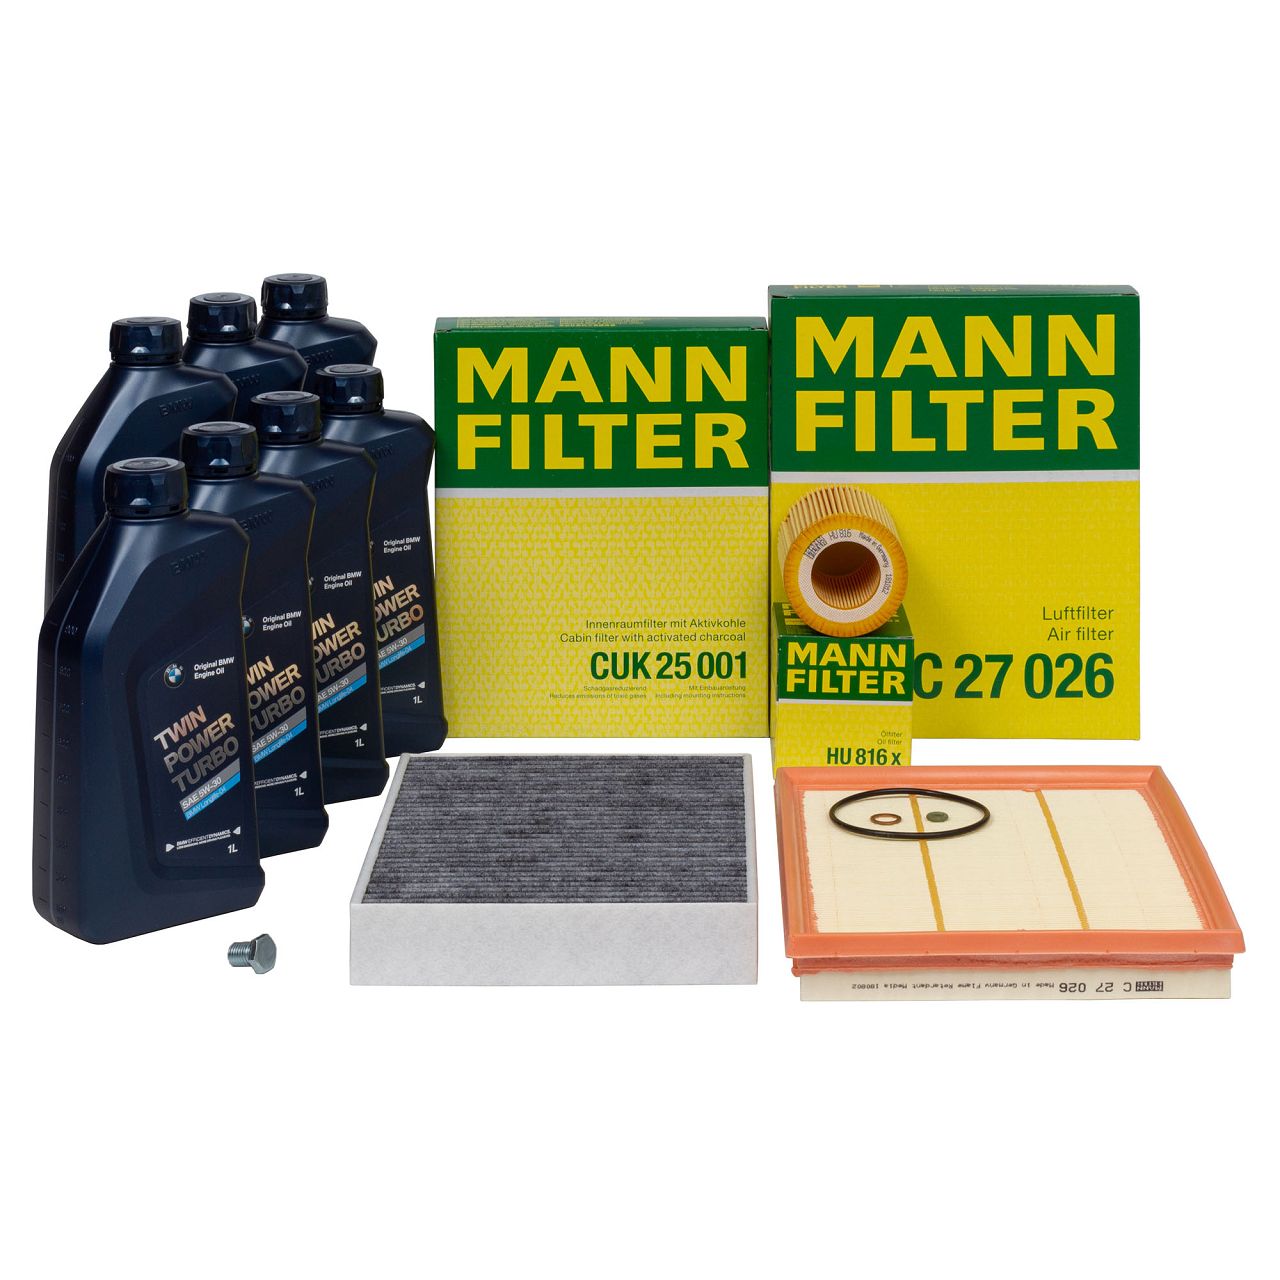 MANN Filterset + 7L ORIGINAL 5W30 Motoröl BMW F20/21 M135i F22/23 M235i F30-34 F32-36 N55